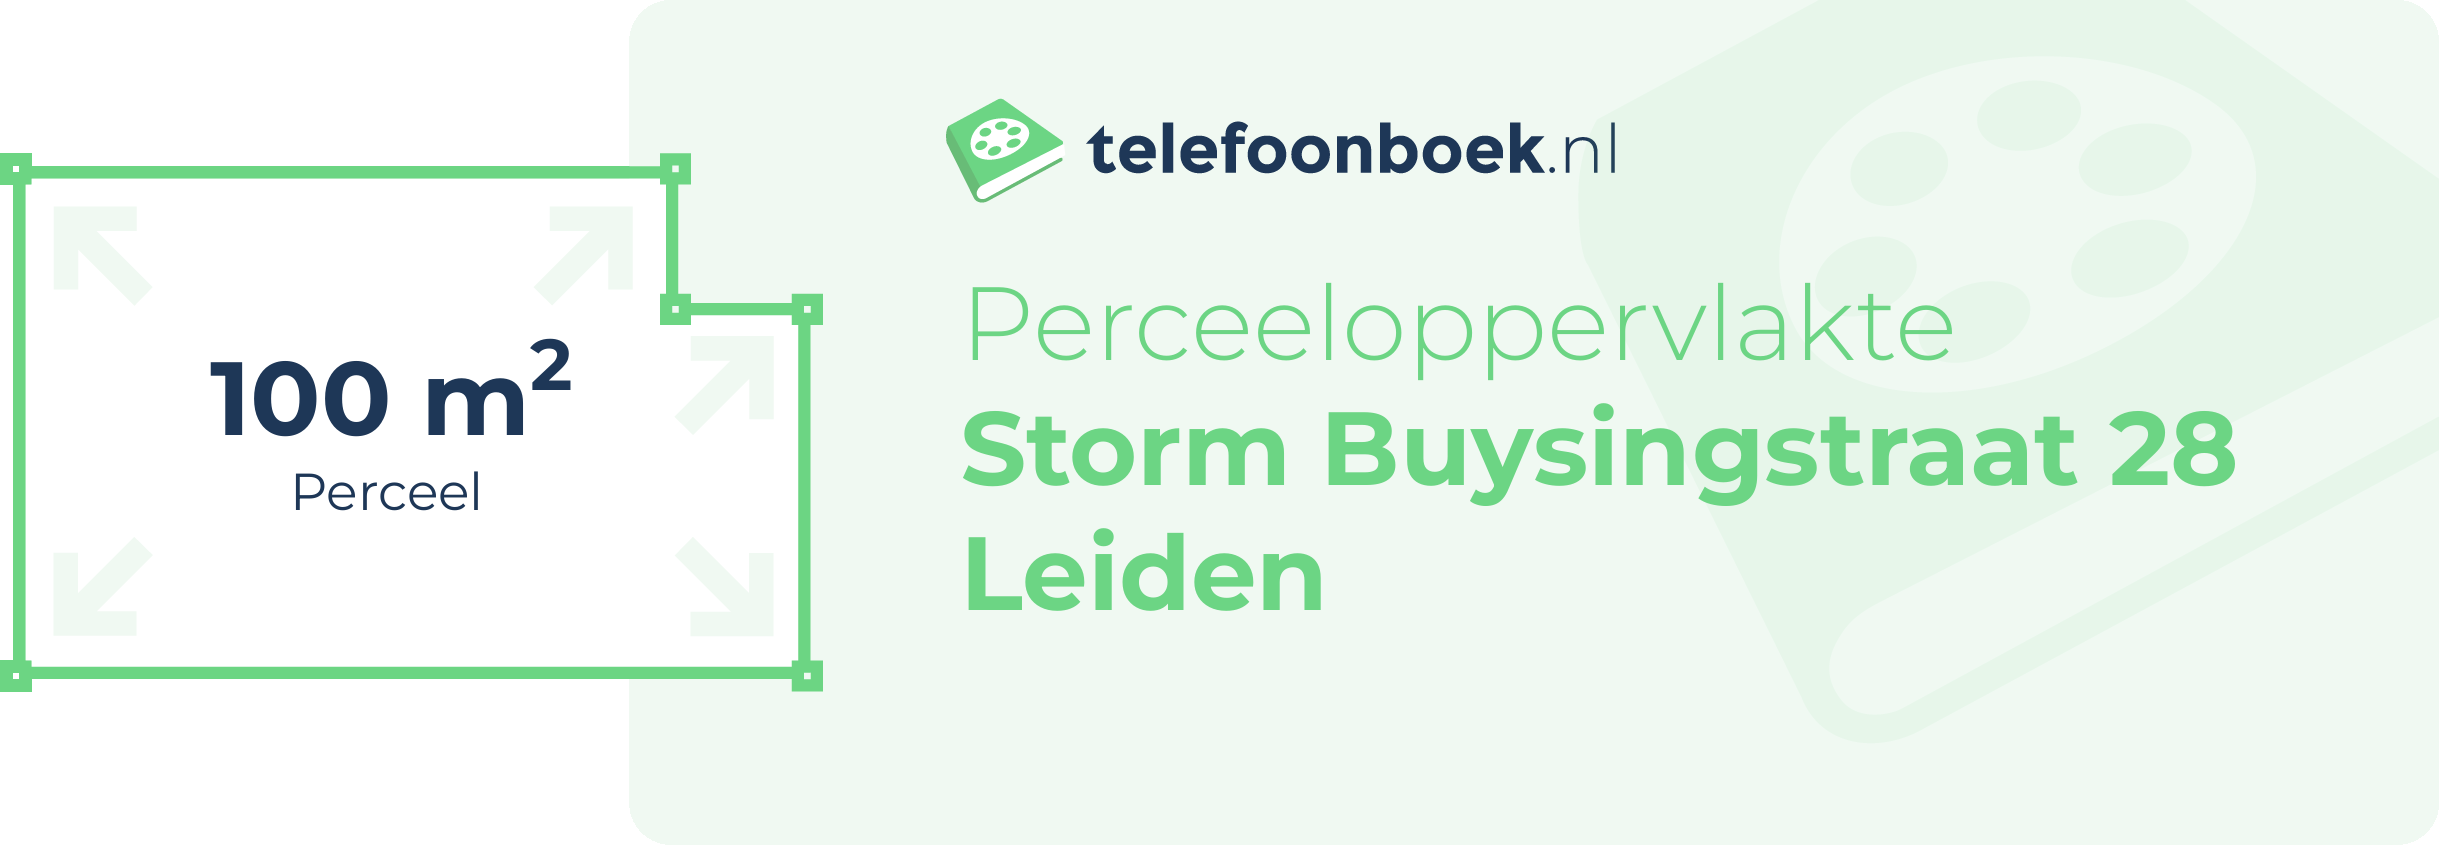 Perceeloppervlakte Storm Buysingstraat 28 Leiden